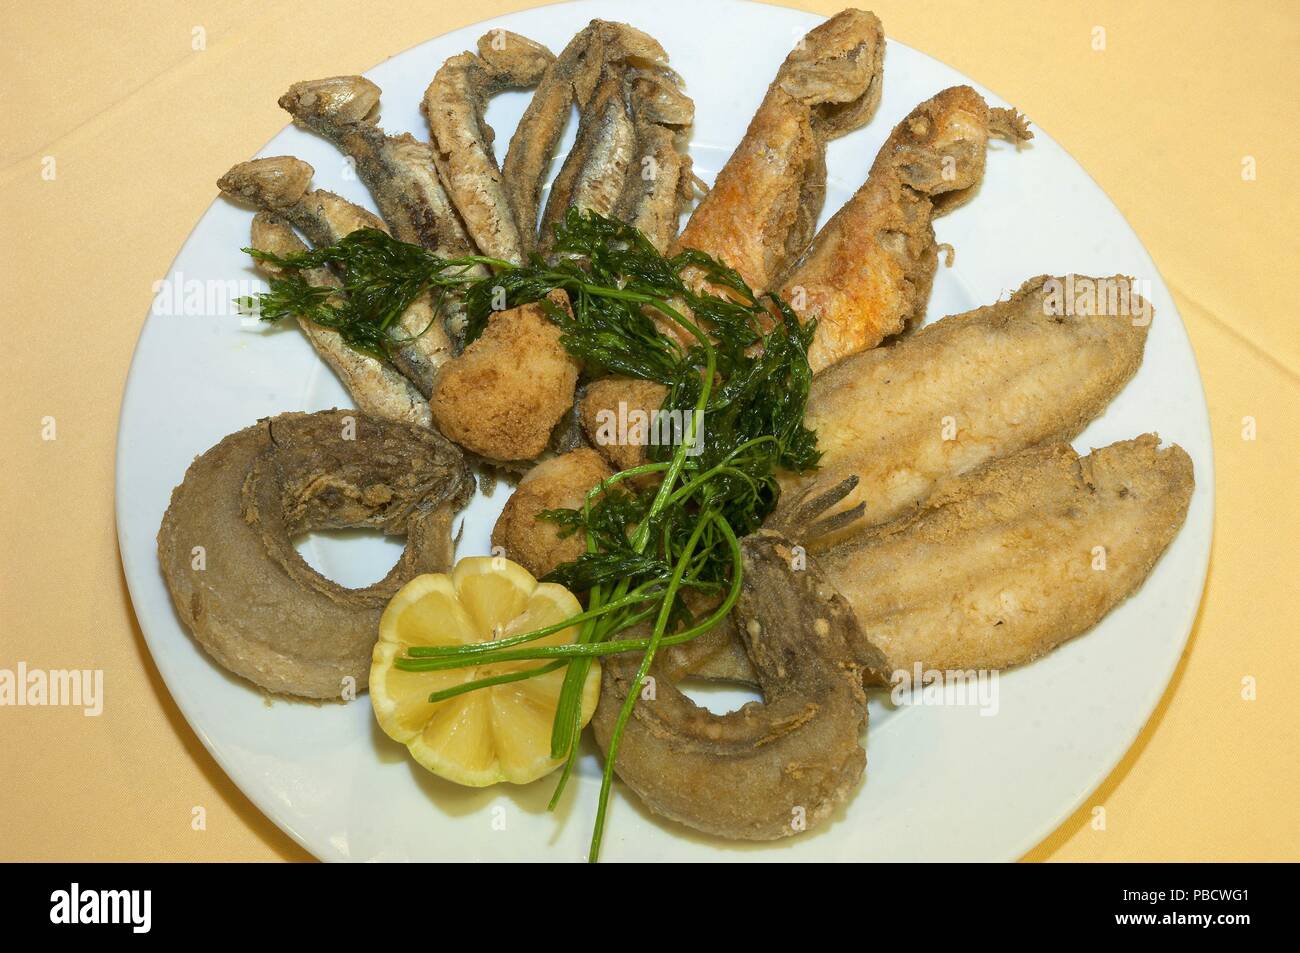 La friture de poissons typiques de la région, de l'Andalousie, Espagne, Europe. Banque D'Images